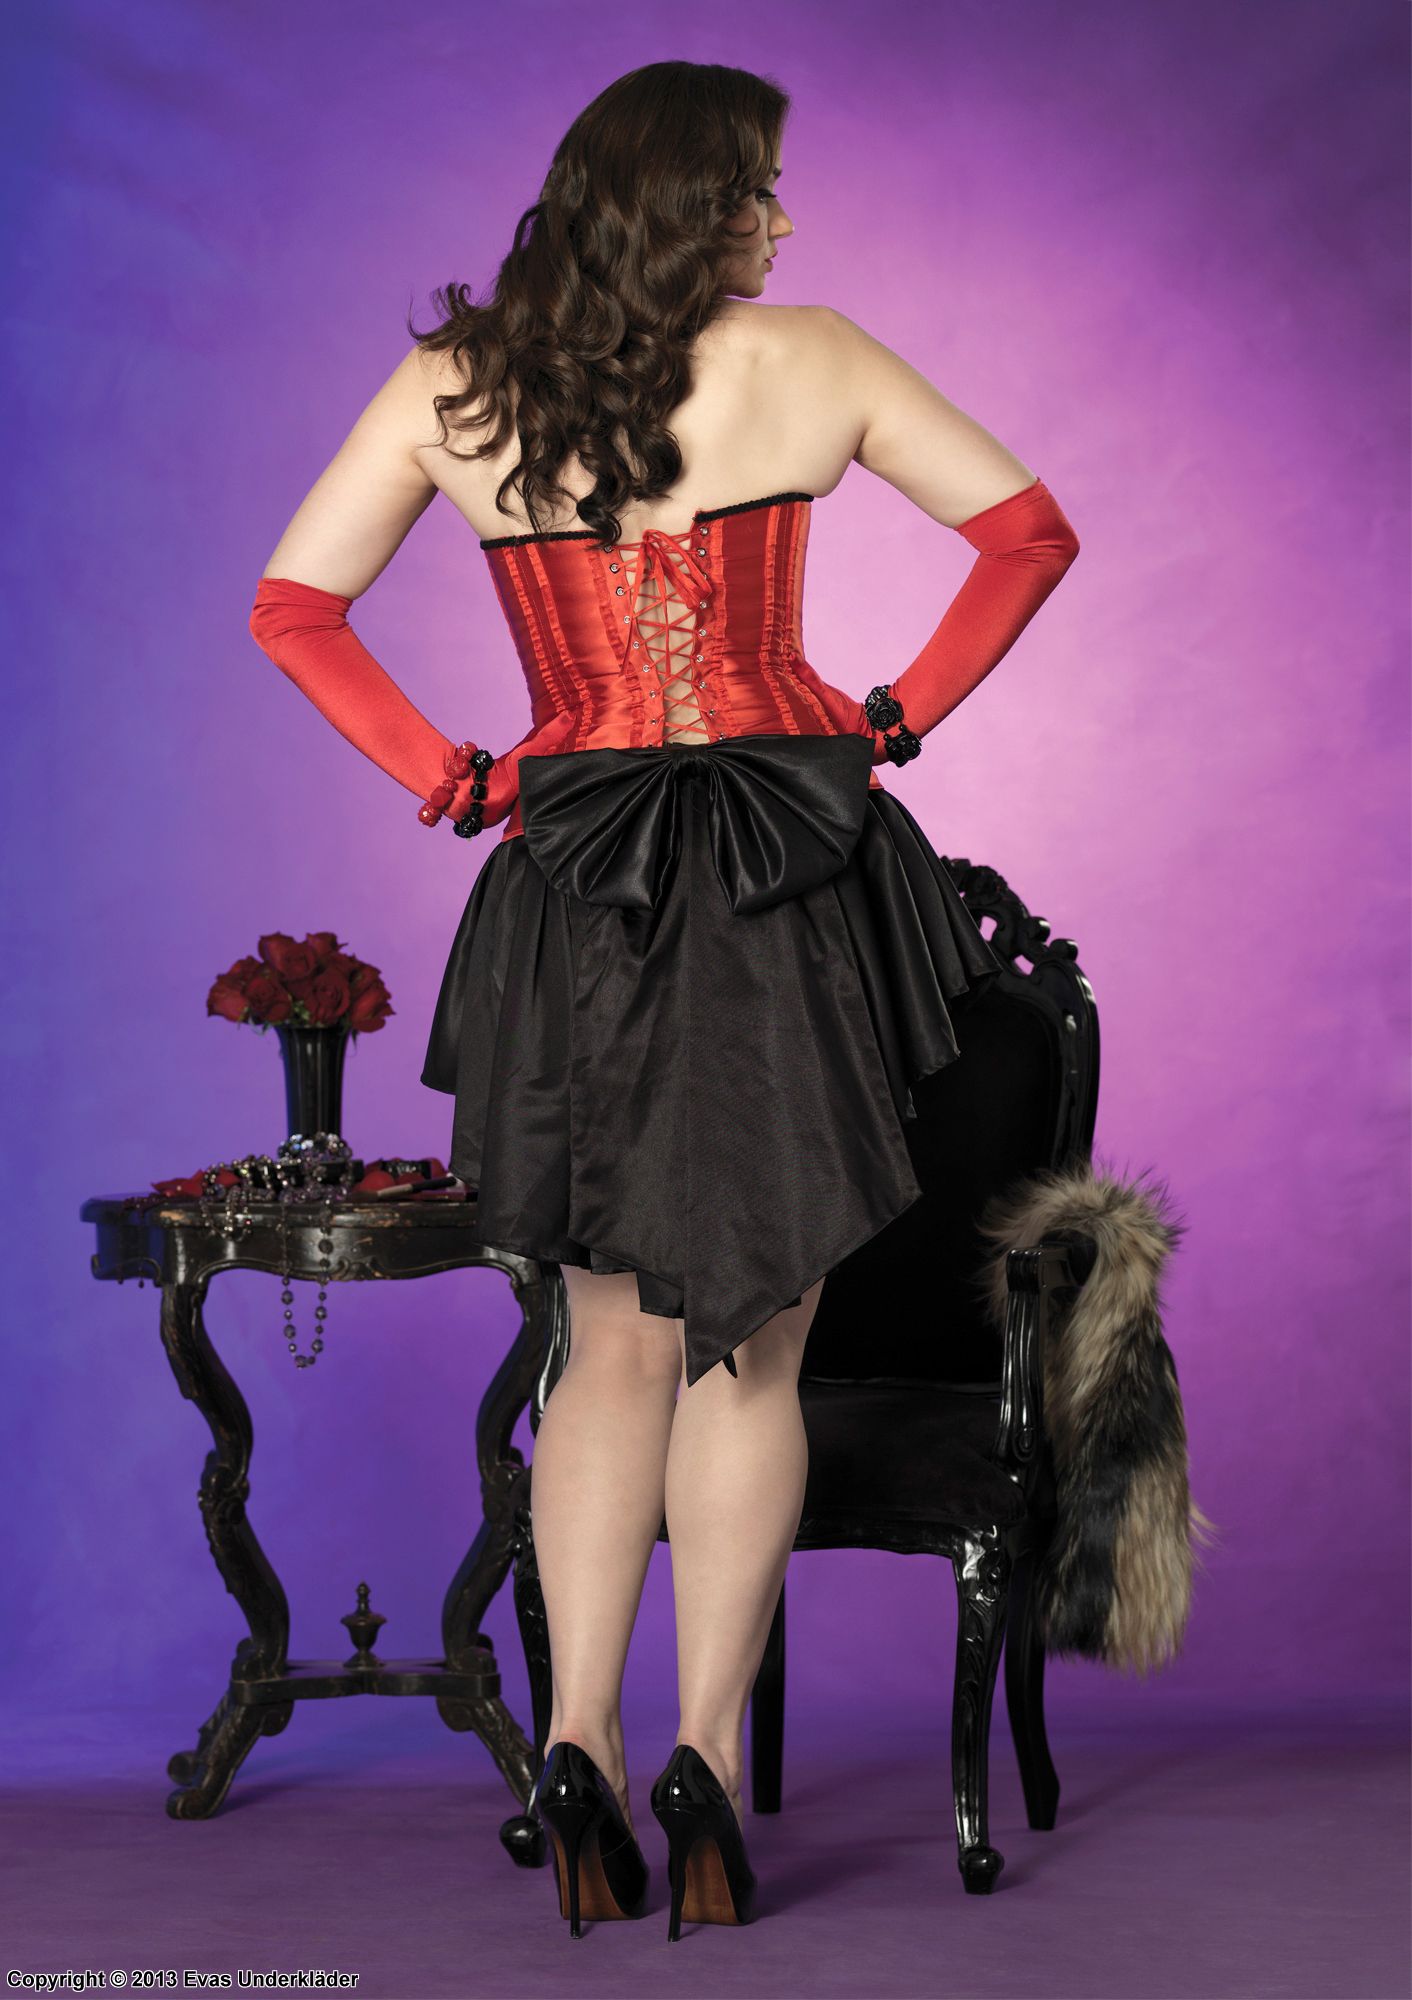 Plus size corset / bustier